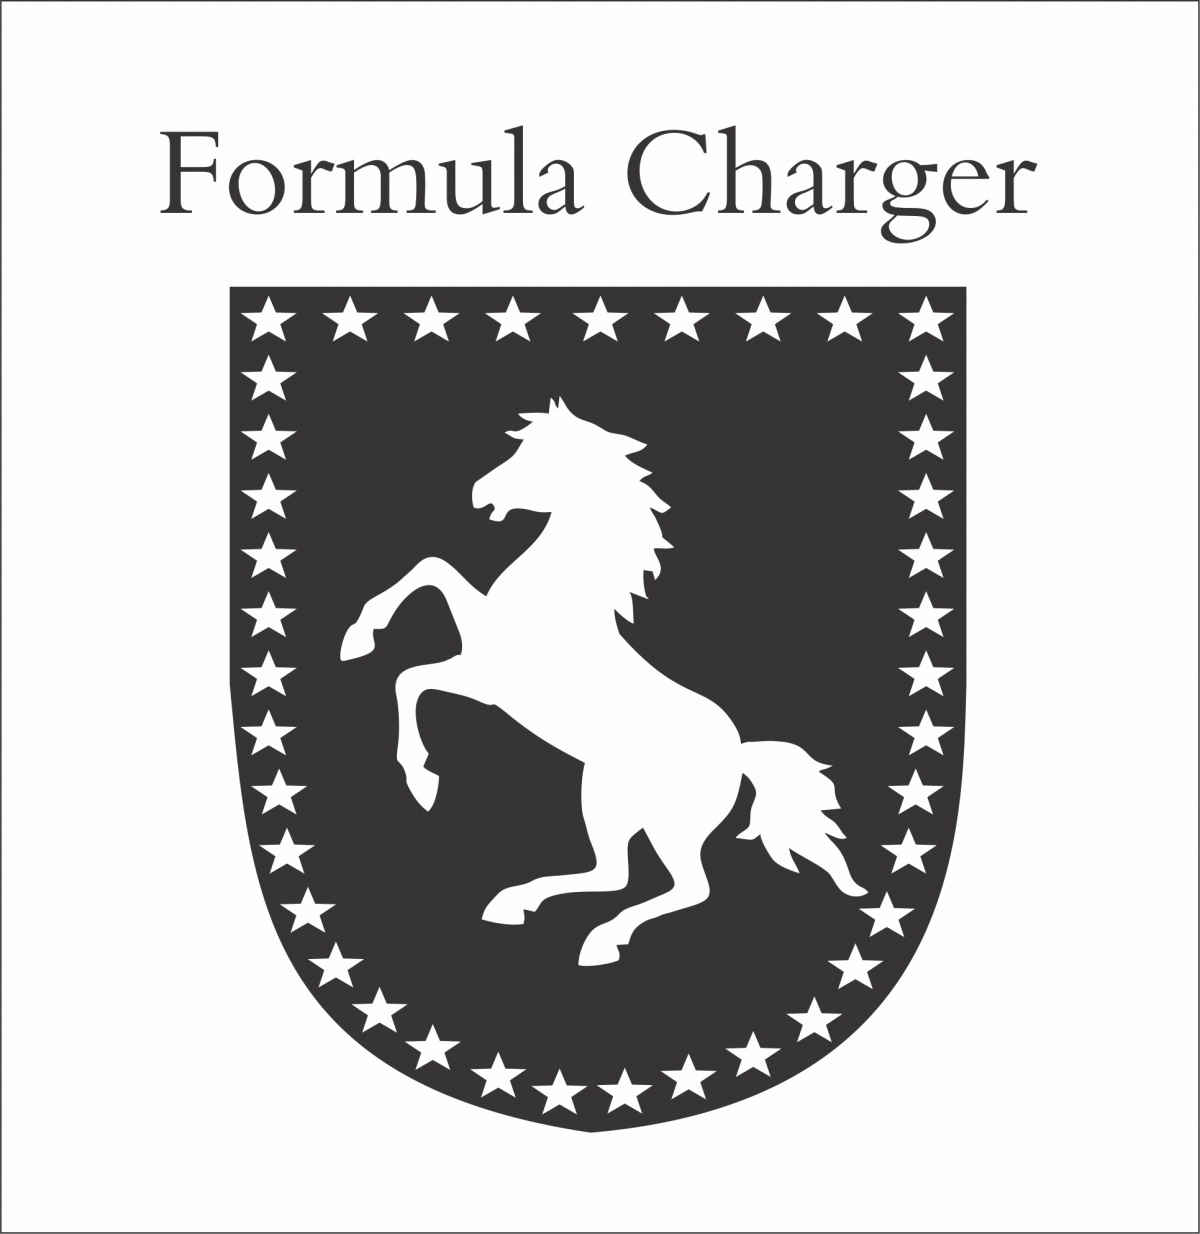 Procuro sócio- Fórmula Charger